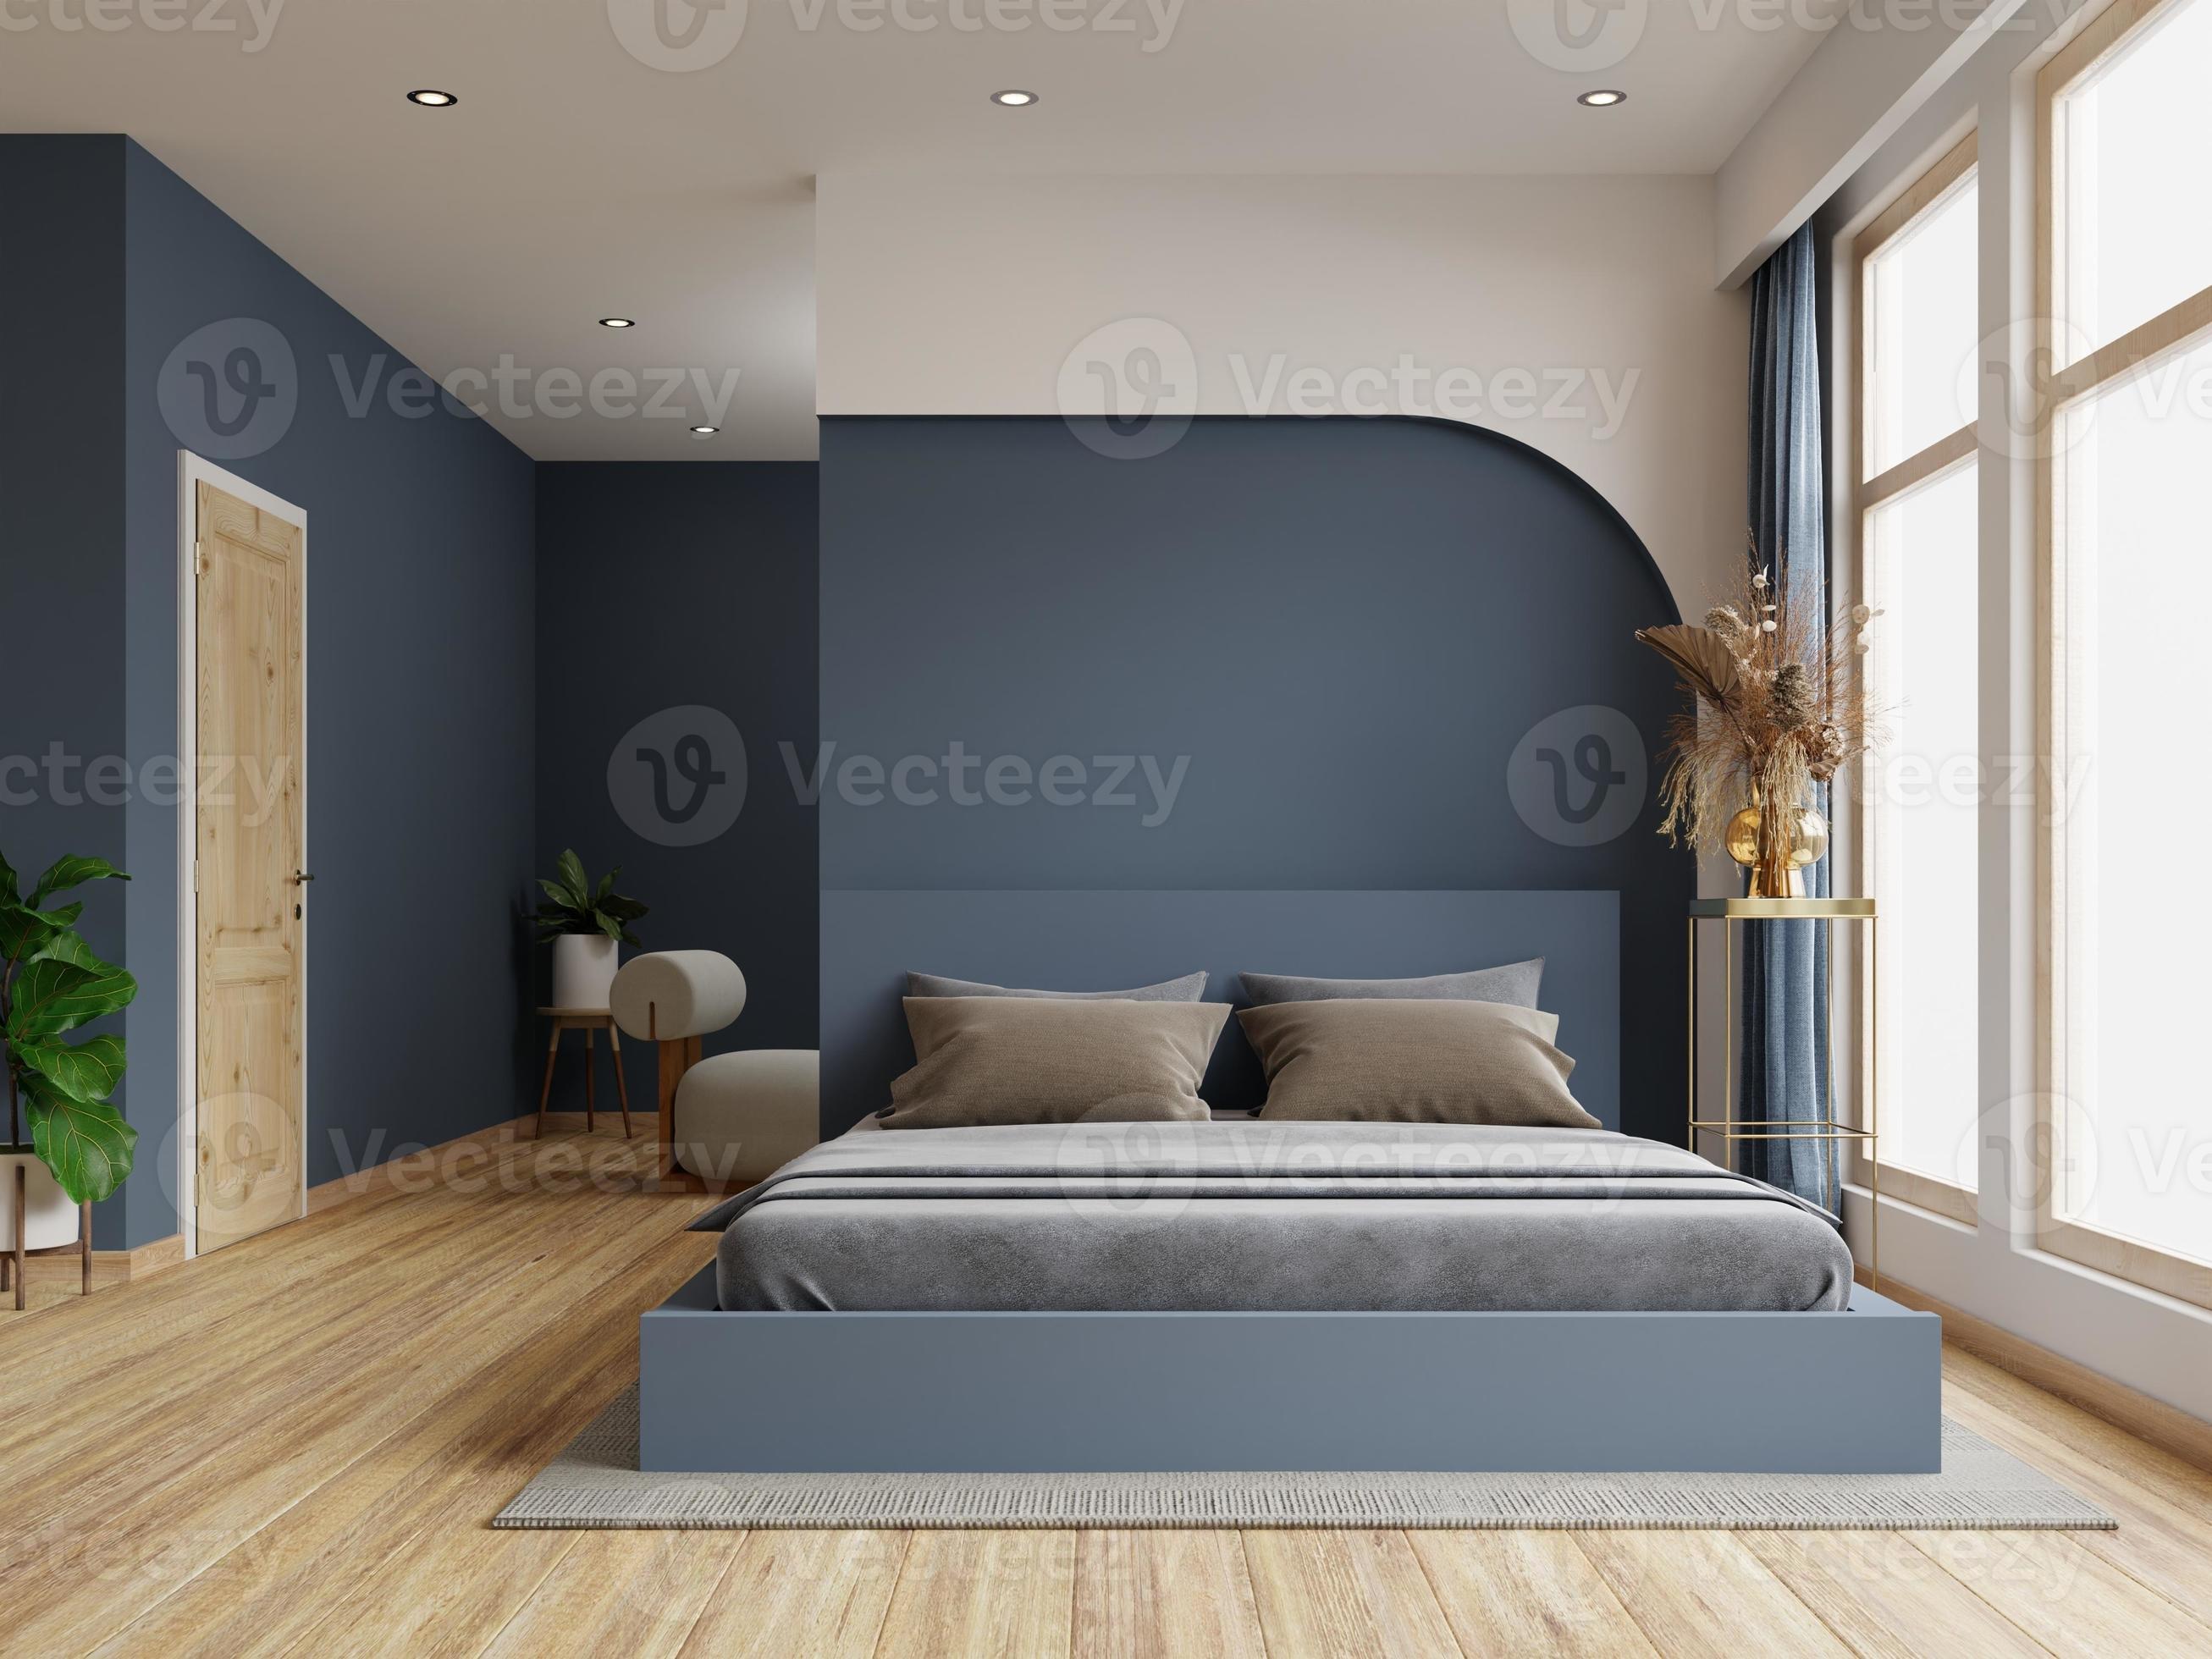 Accommodatie Tot stand brengen evalueren donker bed en mockup donkerblauwe muur in het interieur van de slaapkamer.  17526708 Stockfoto